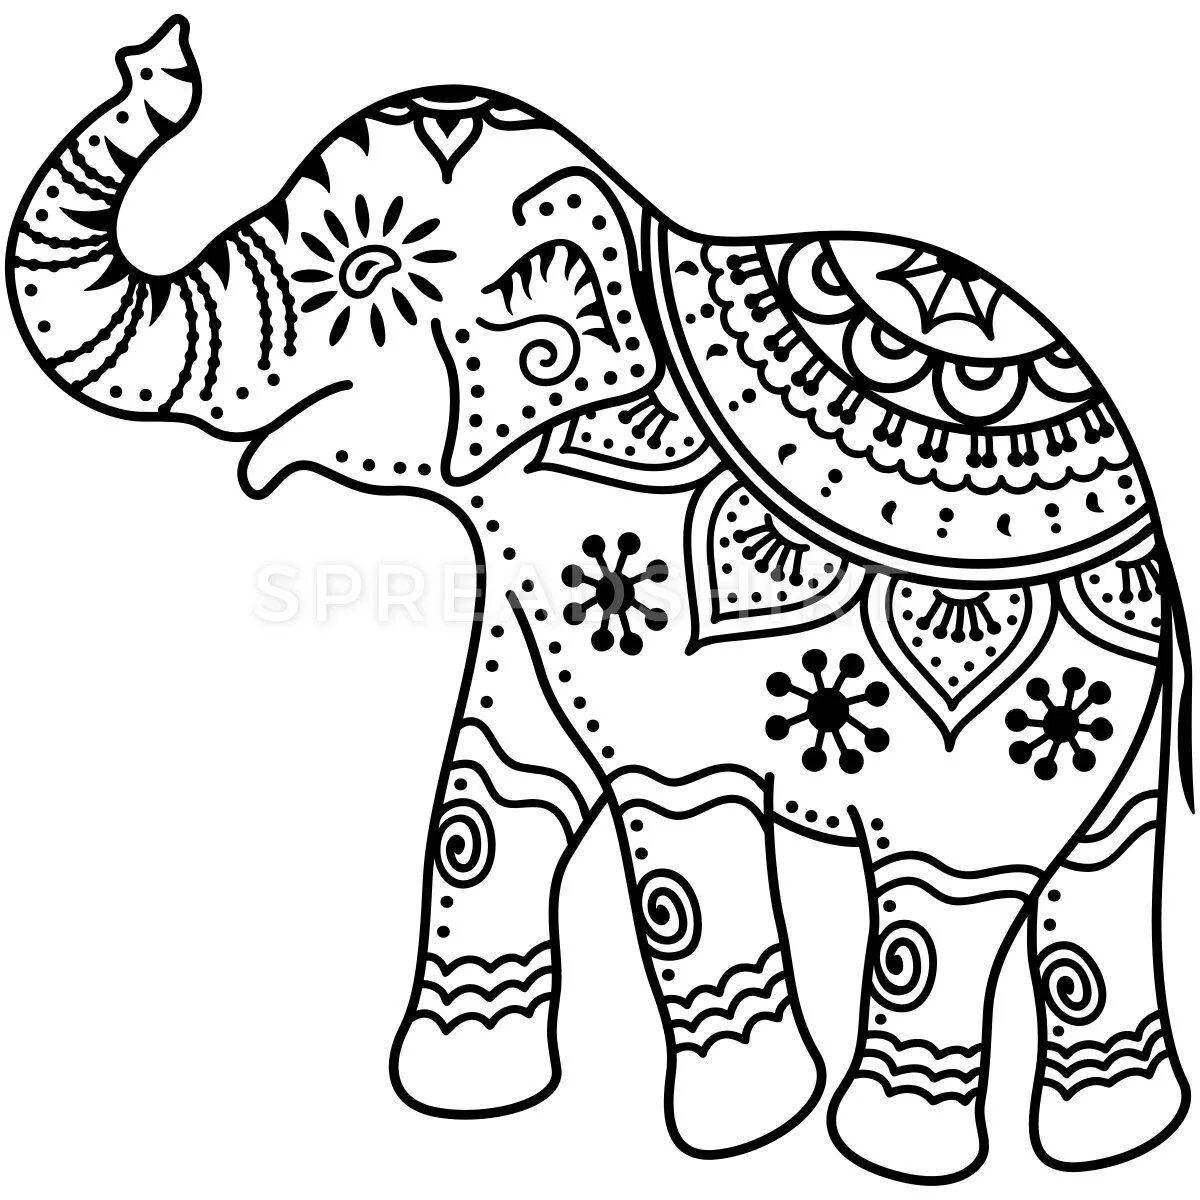 Раскраска очаровательный индийский слон для детей